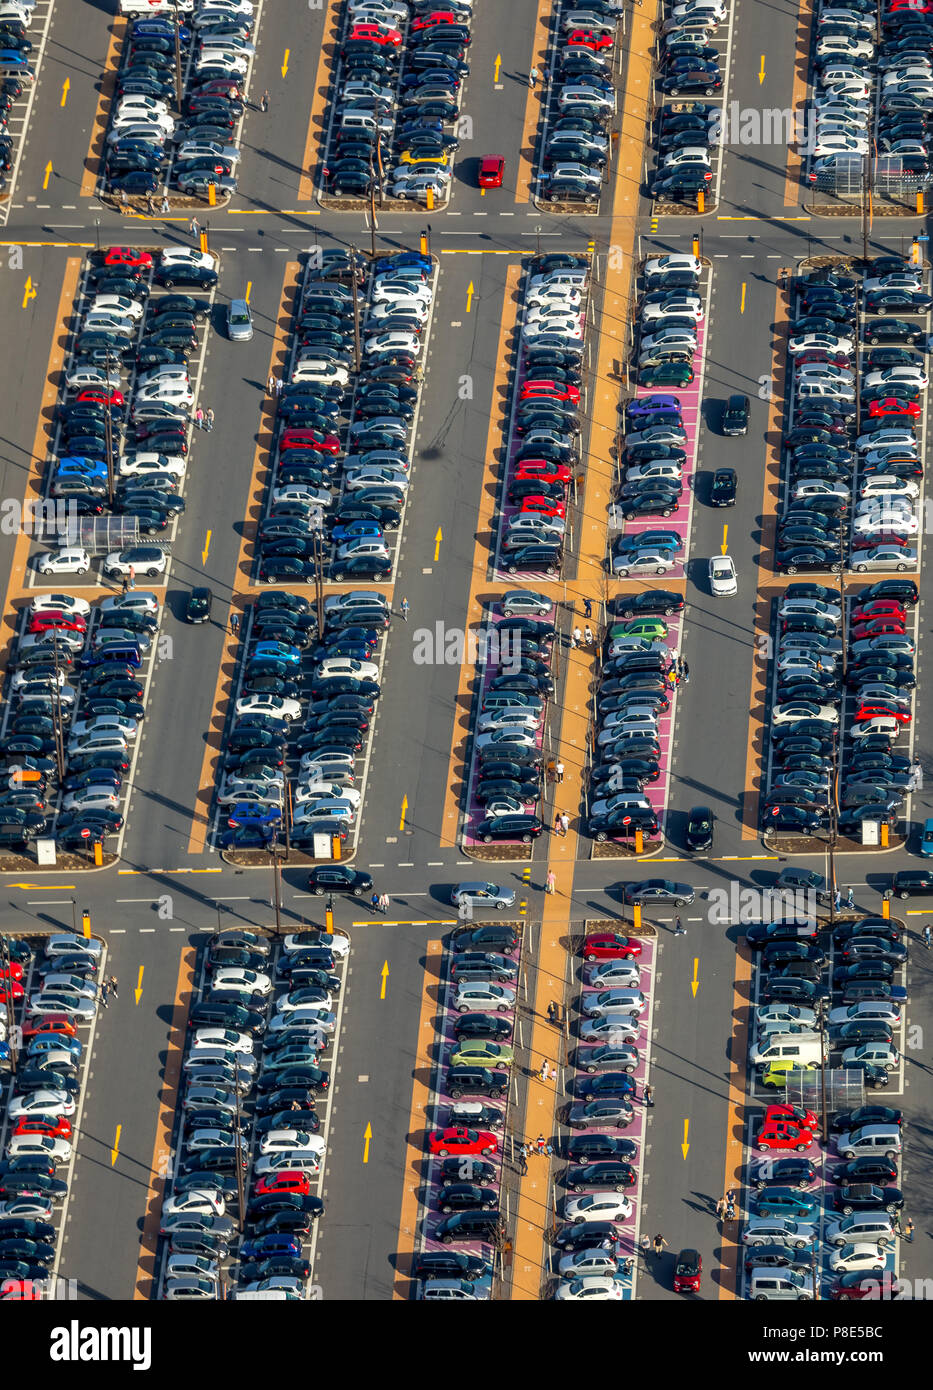 Luftaufnahme, voller Parkplatz mit Fahrbahnmarkierungen, Einkaufszentrum Ruhr Park, Bochum, Ruhrgebiet, Nordrhein-Westfalen, Deutschland Stockfoto